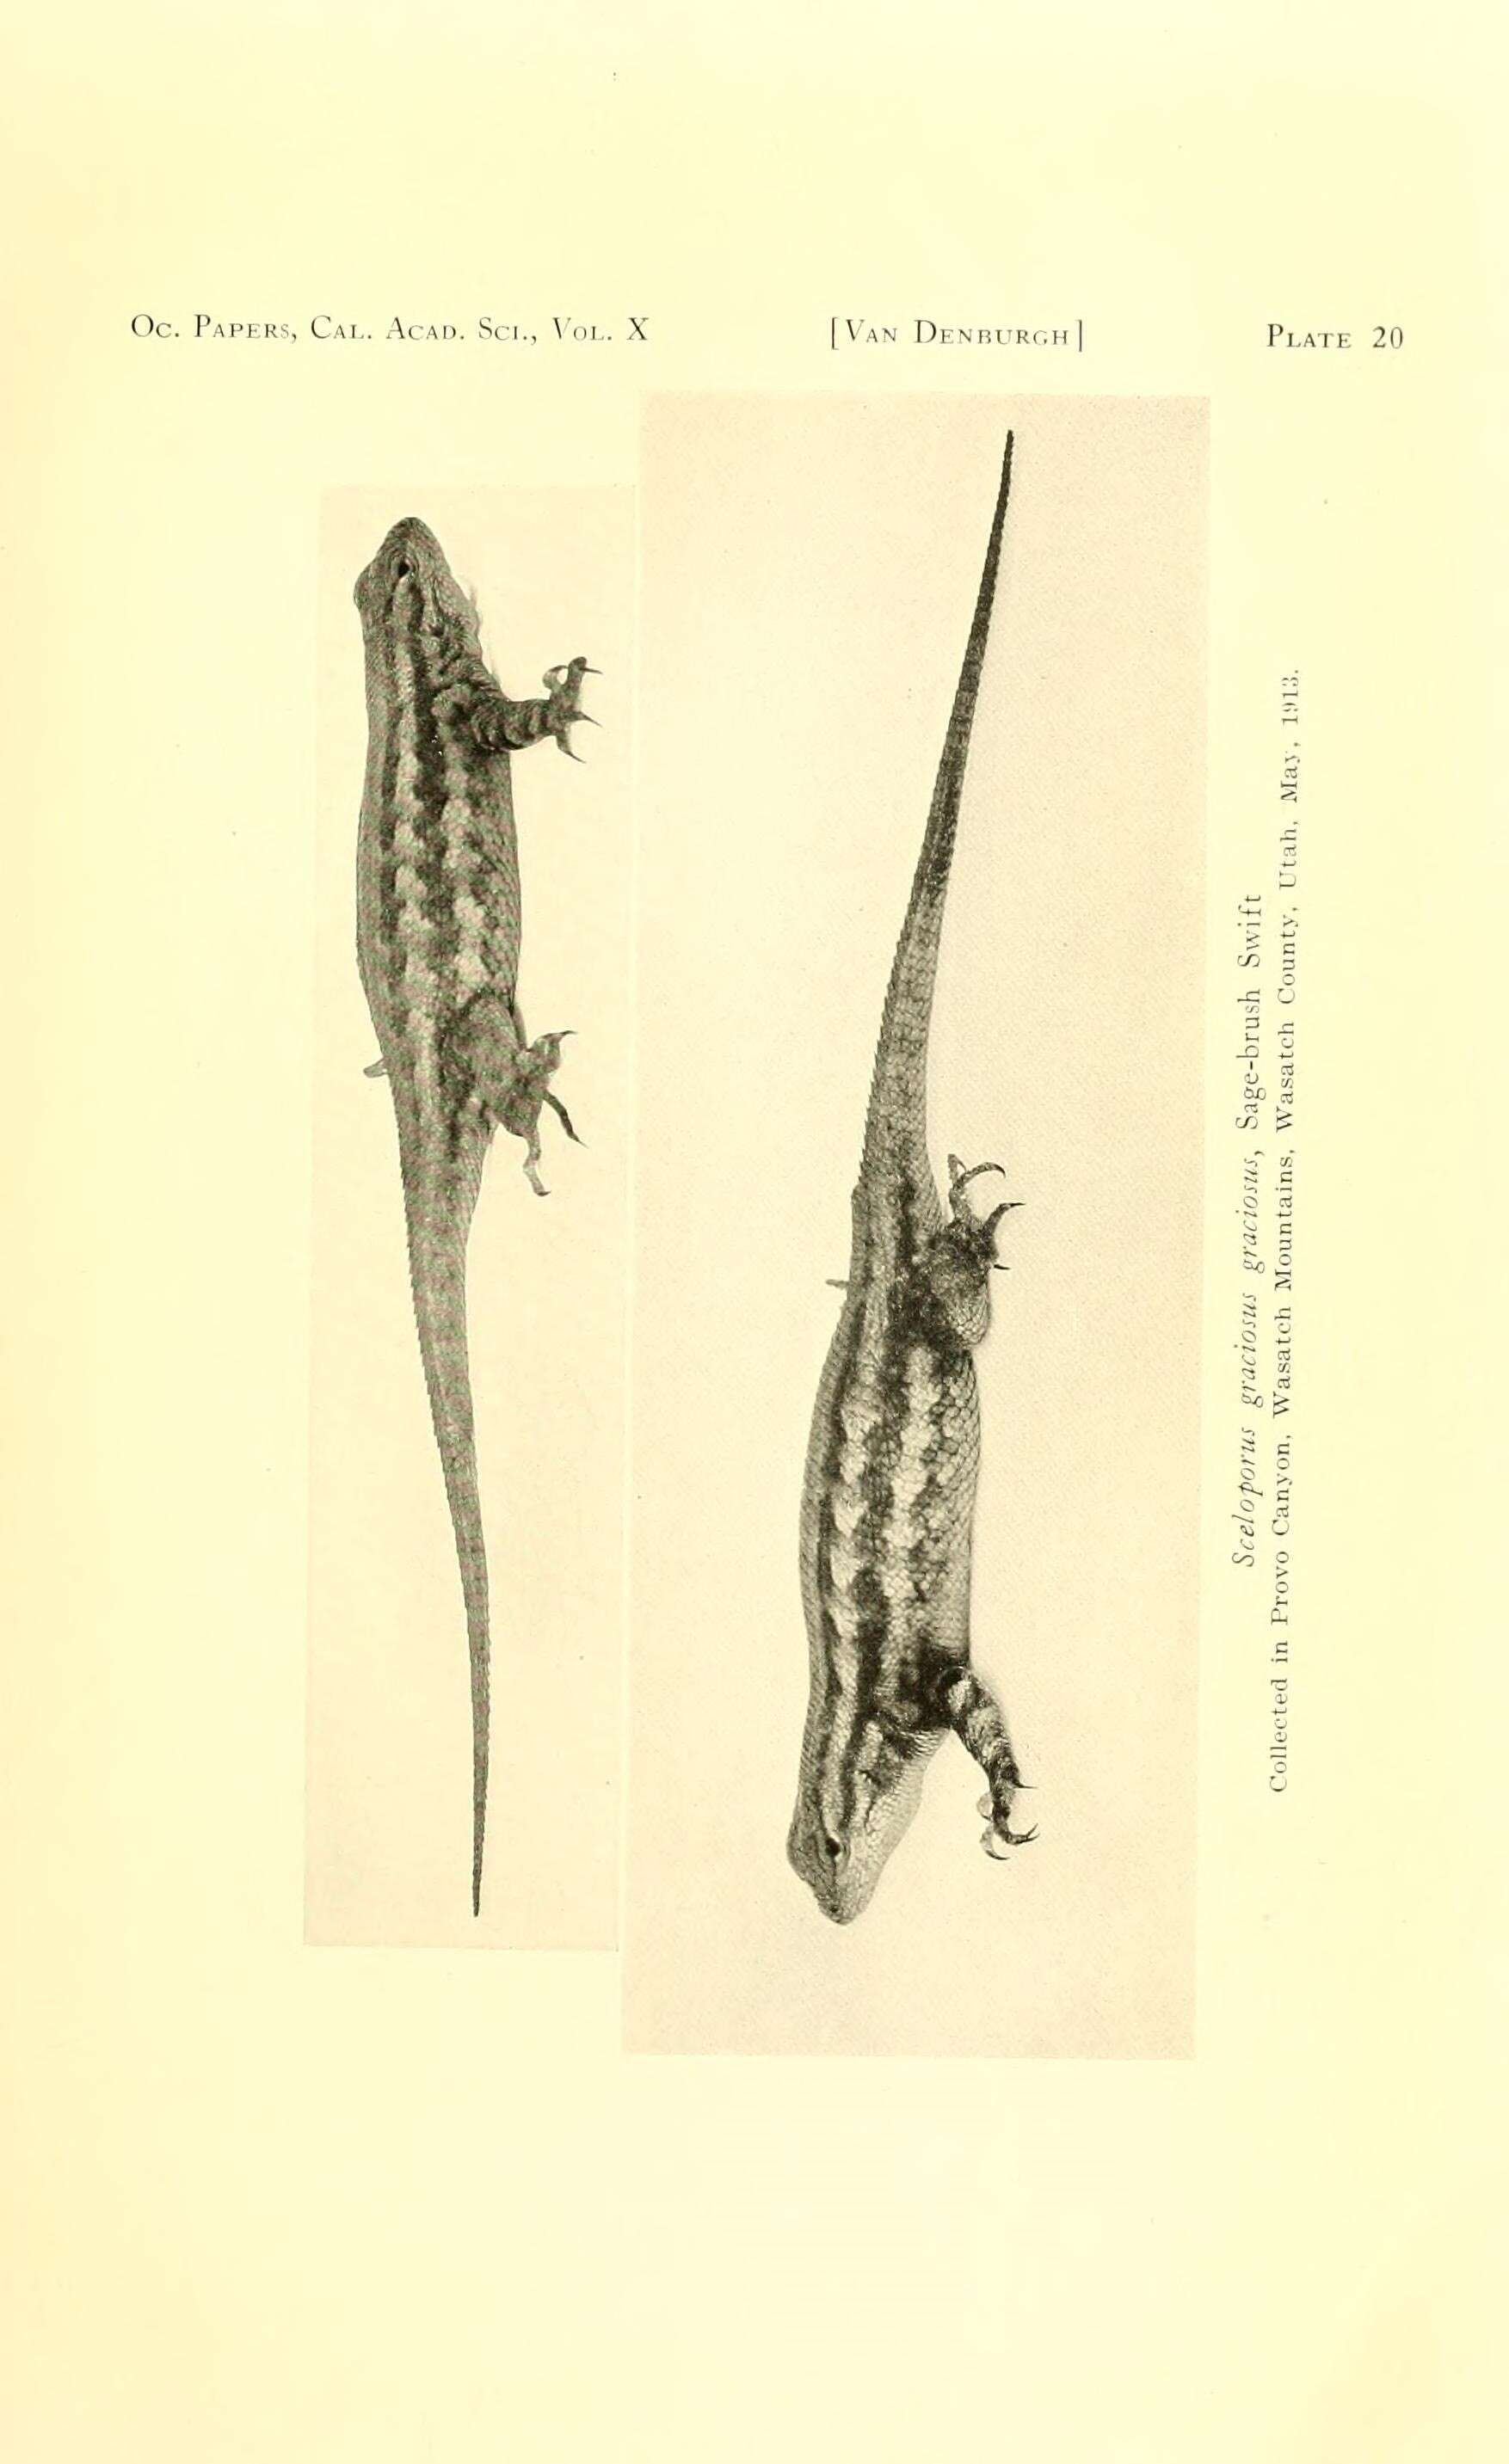 Image of Sceloporus graciosus graciosus Baird & Girard 1852